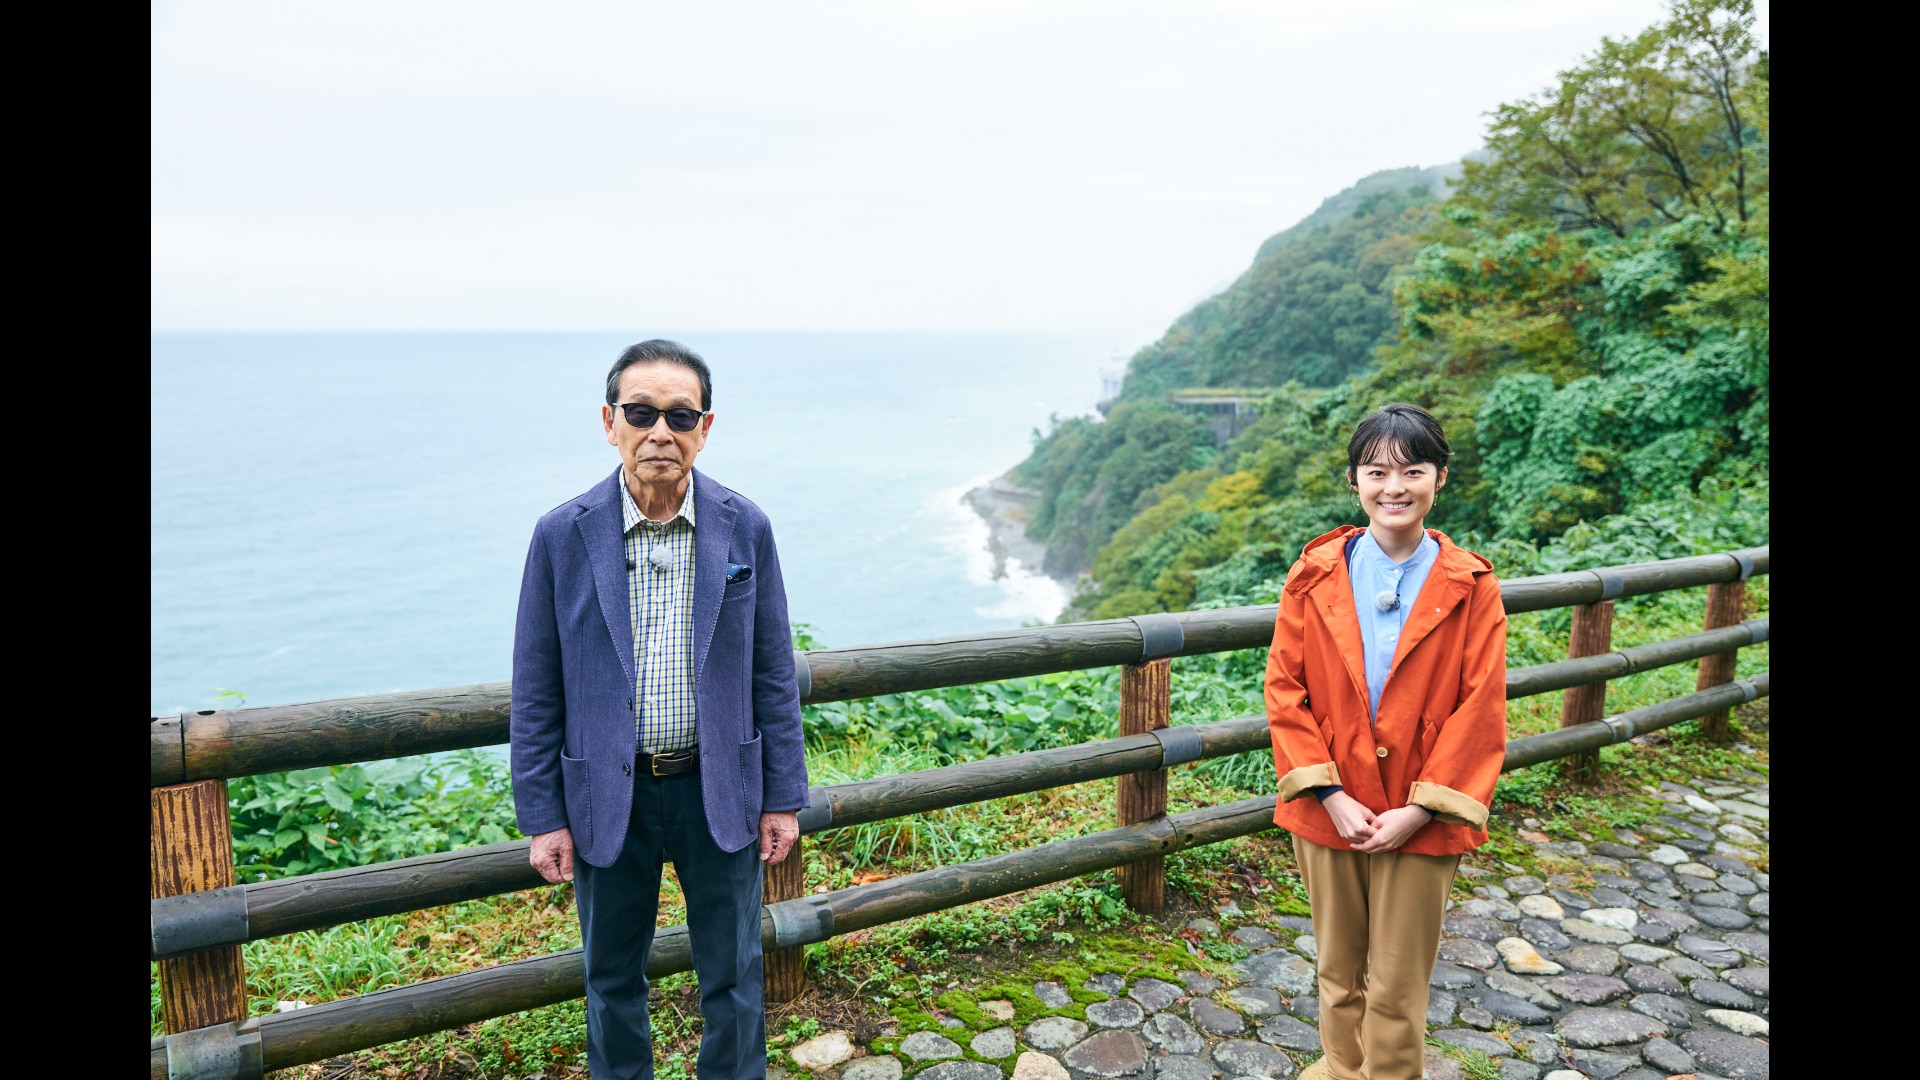 糸魚川〜君は糸魚川の本当のすごさを知っているか?〜」 - ブラタモリ - NHK